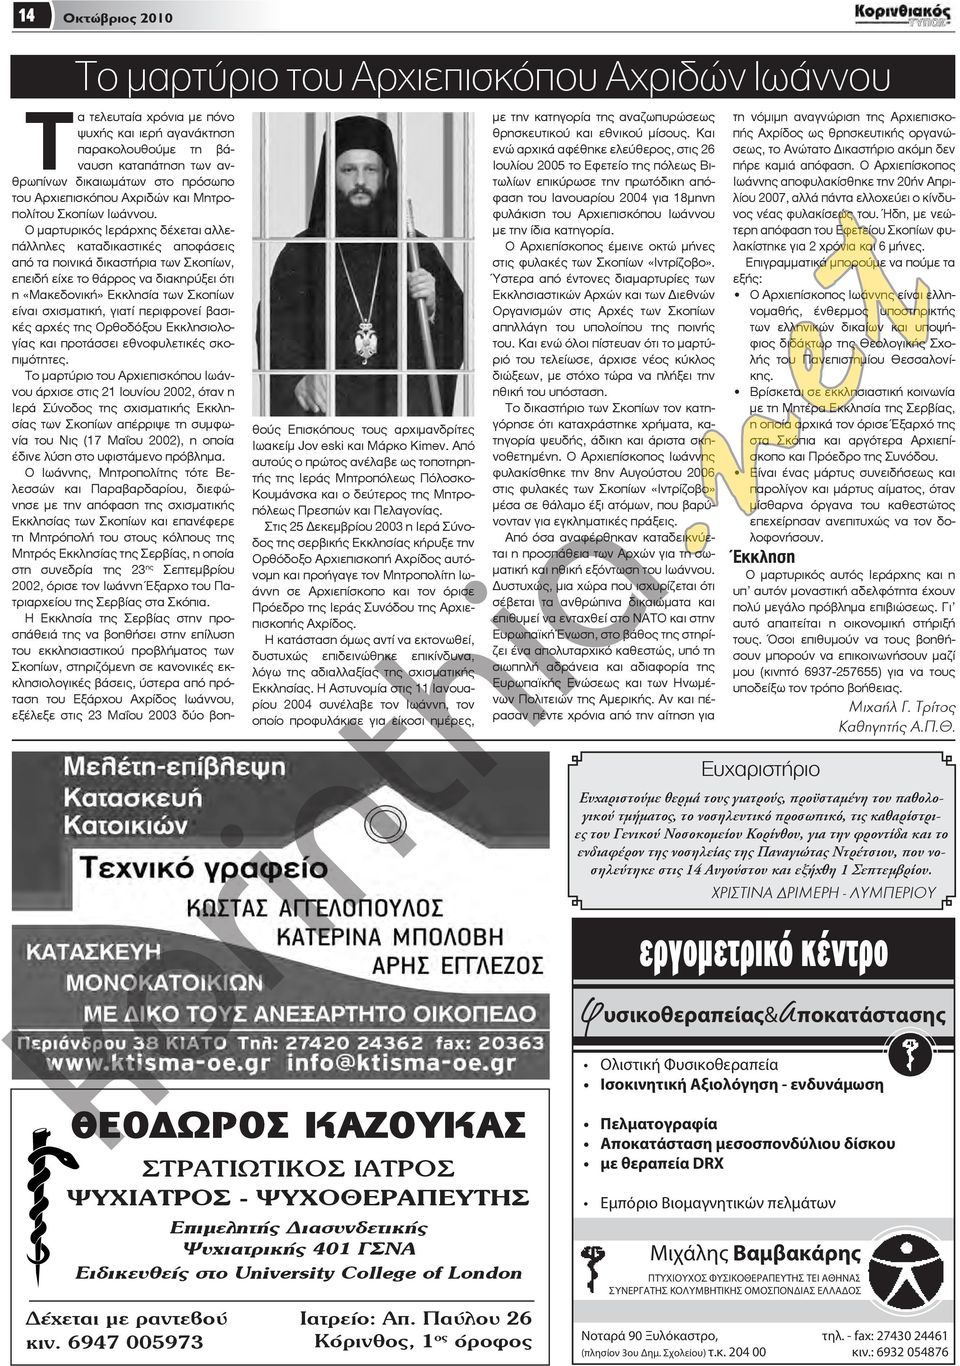 Ο μαρτυρικός Ιεράρχης δέχεται αλλεπάλληλες καταδικαστικές αποφάσεις από τα ποινικά δικαστήρια των Σκοπίων, επειδή είχε το θάρρος να διακηρύξει ότι η «Μακεδονική» Εκκλησία των Σκοπίων είναι